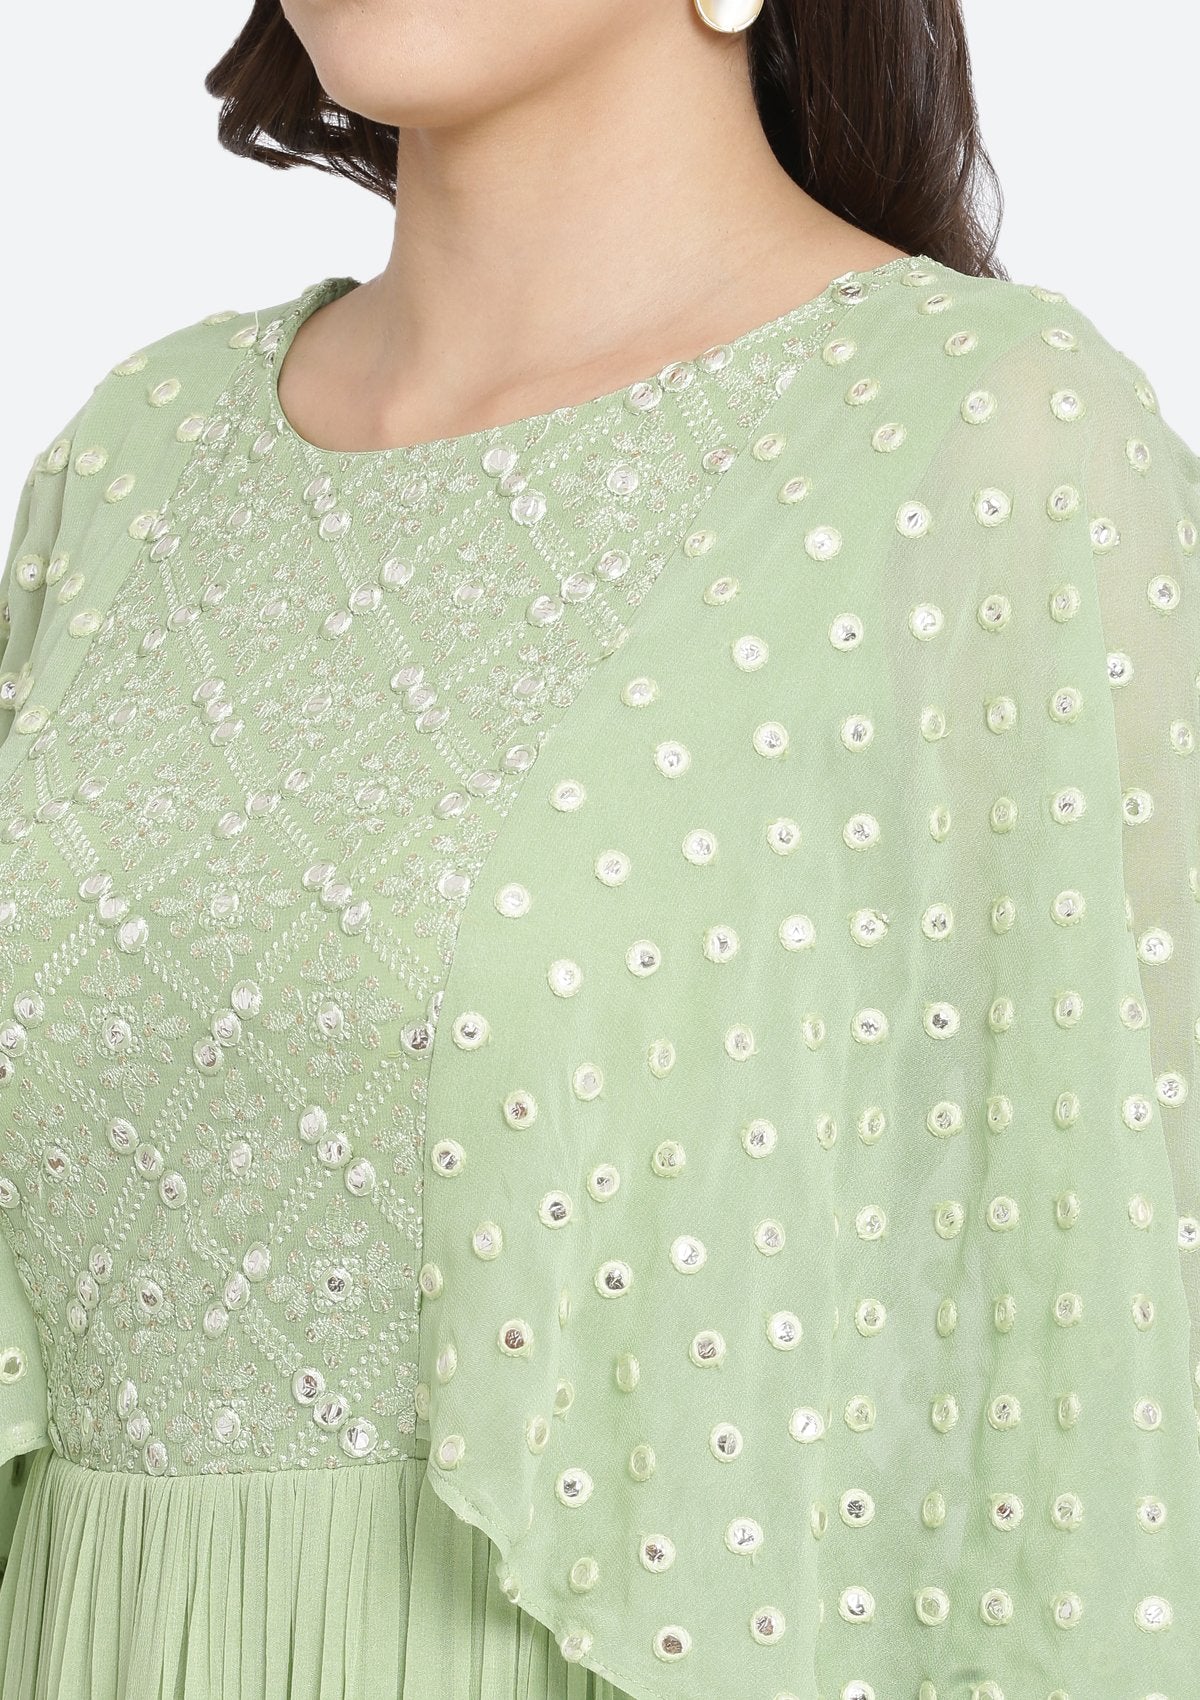 Pista Green Chikankari Georgette Designer Gown-Koskii